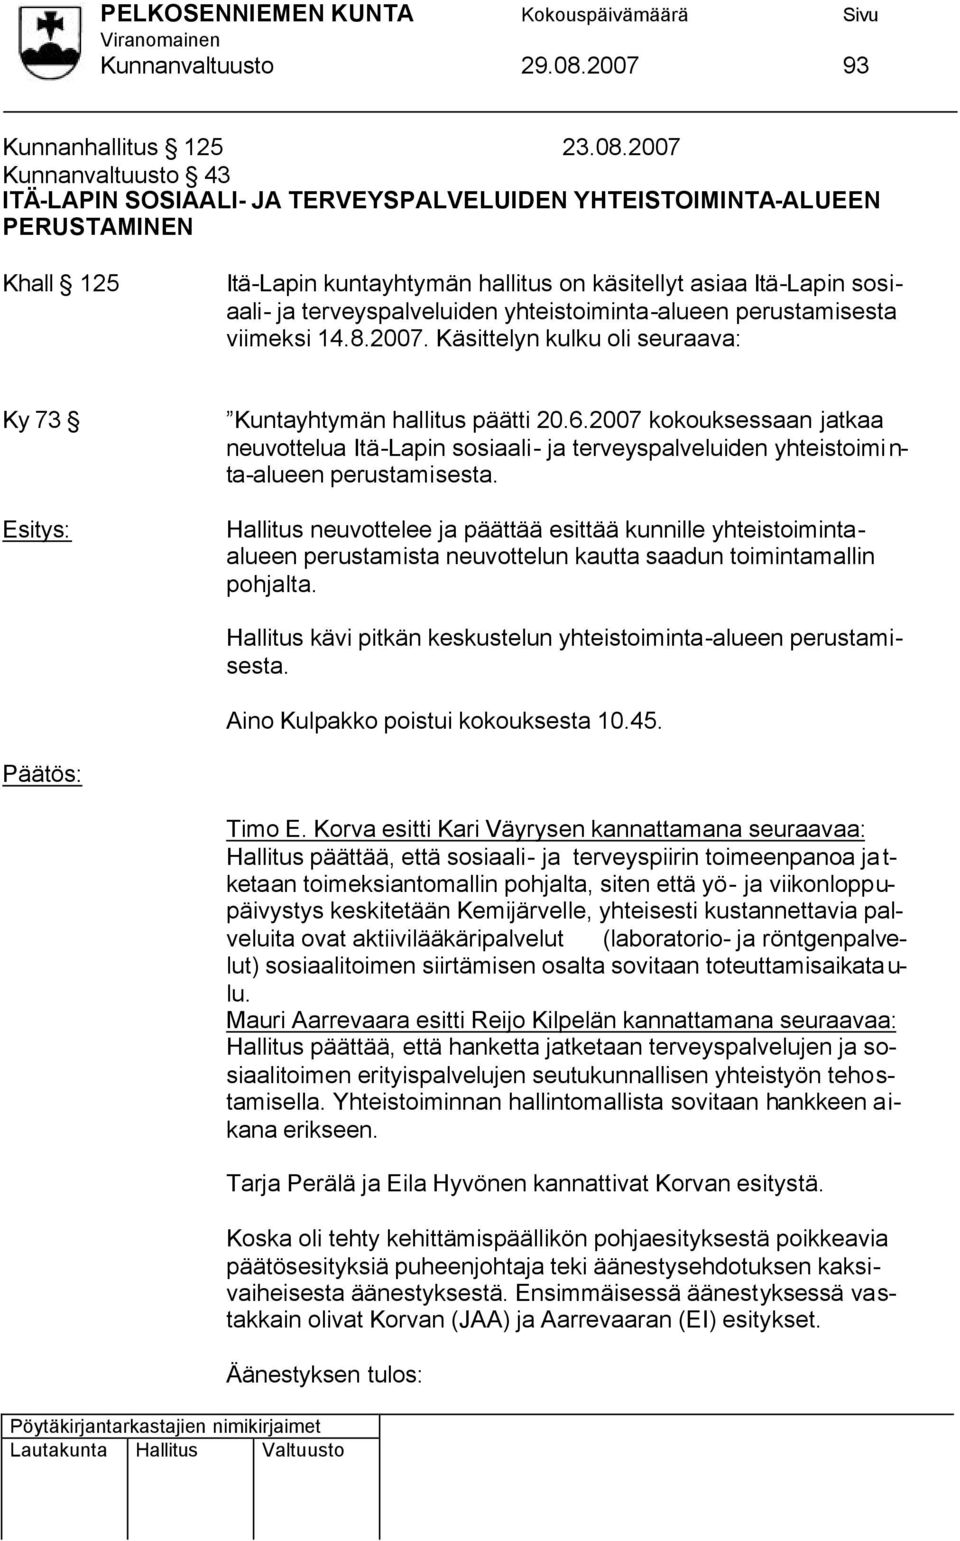 2007 Kunnanvaltuusto 43 ITÄ-LAPIN SOSIAALI- JA TERVEYSPALVELUIDEN YHTEISTOIMINTA-ALUEEN PERUSTAMINEN Khall 125 Itä-Lapin kuntayhtymän hallitus on käsitellyt asiaa Itä-Lapin sosiaali- ja